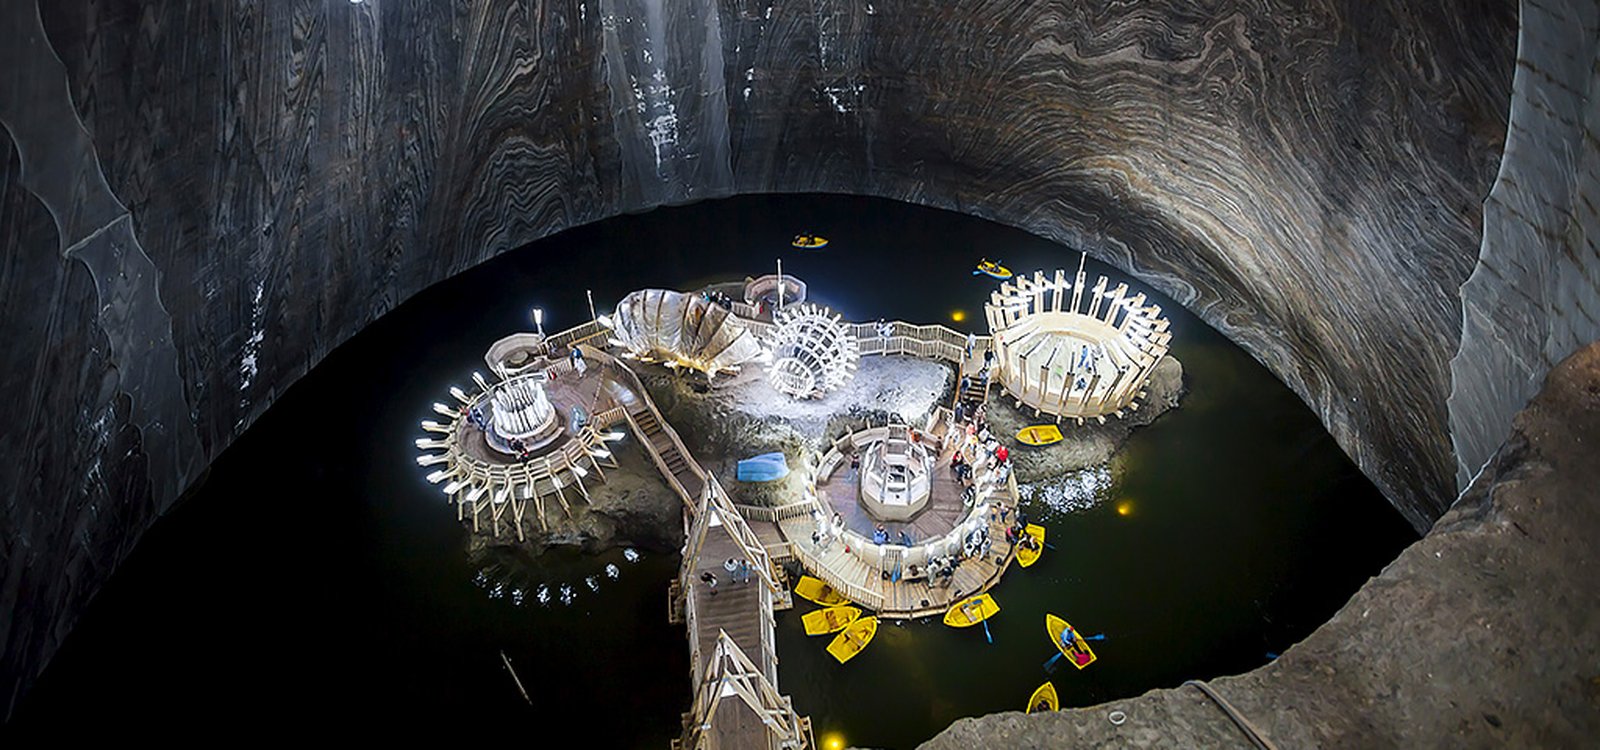 <p>En la mina Salina Turda en Rumanía, hay un lago subterráneo con botes a remo para los visitantes.</p>
